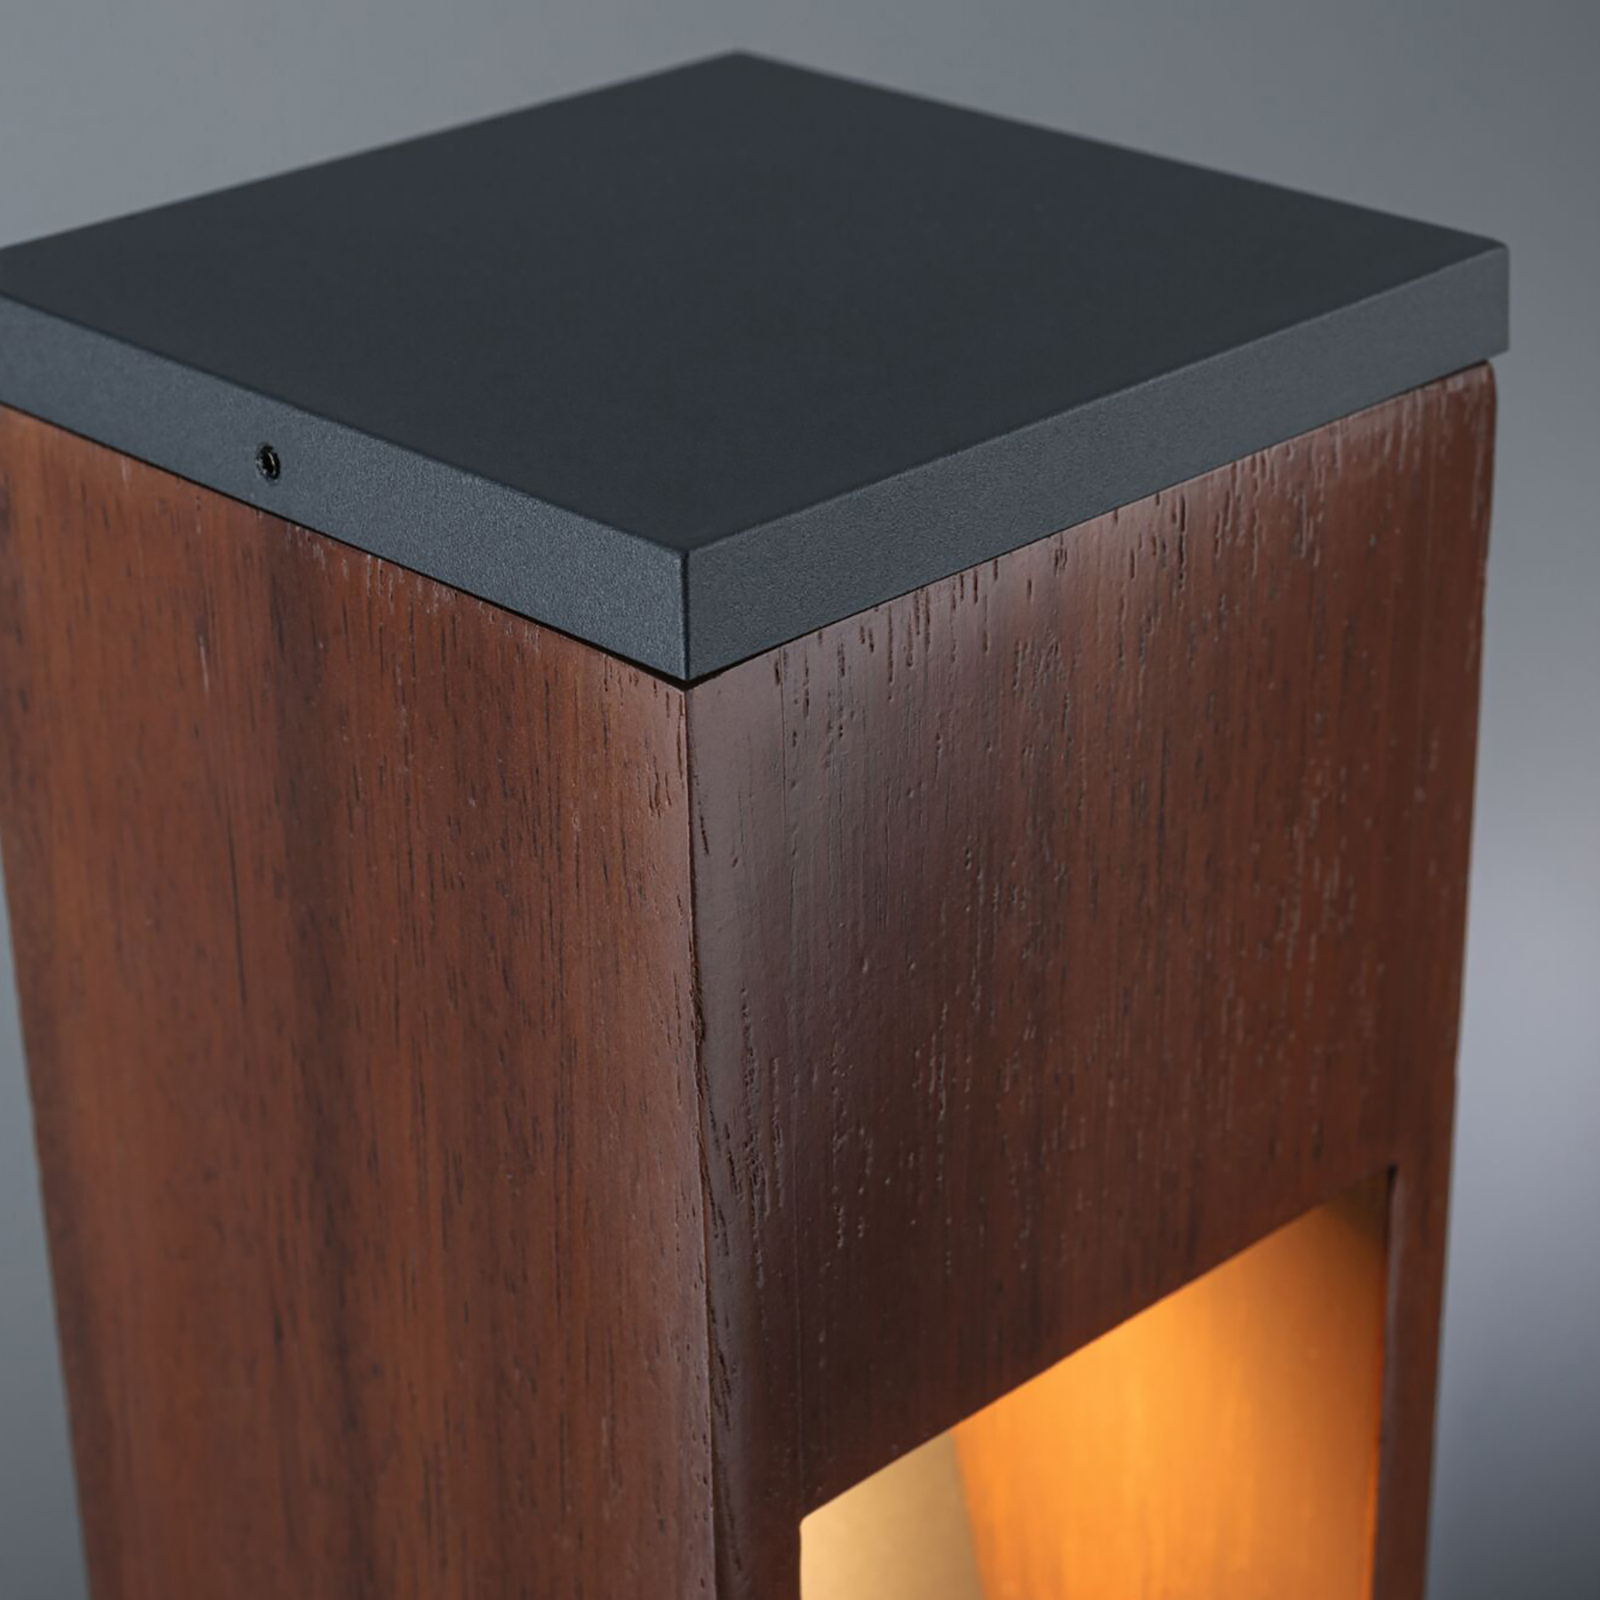 Paulmann Trabia luminaire pour socle LED bois, hauteur 40 cm